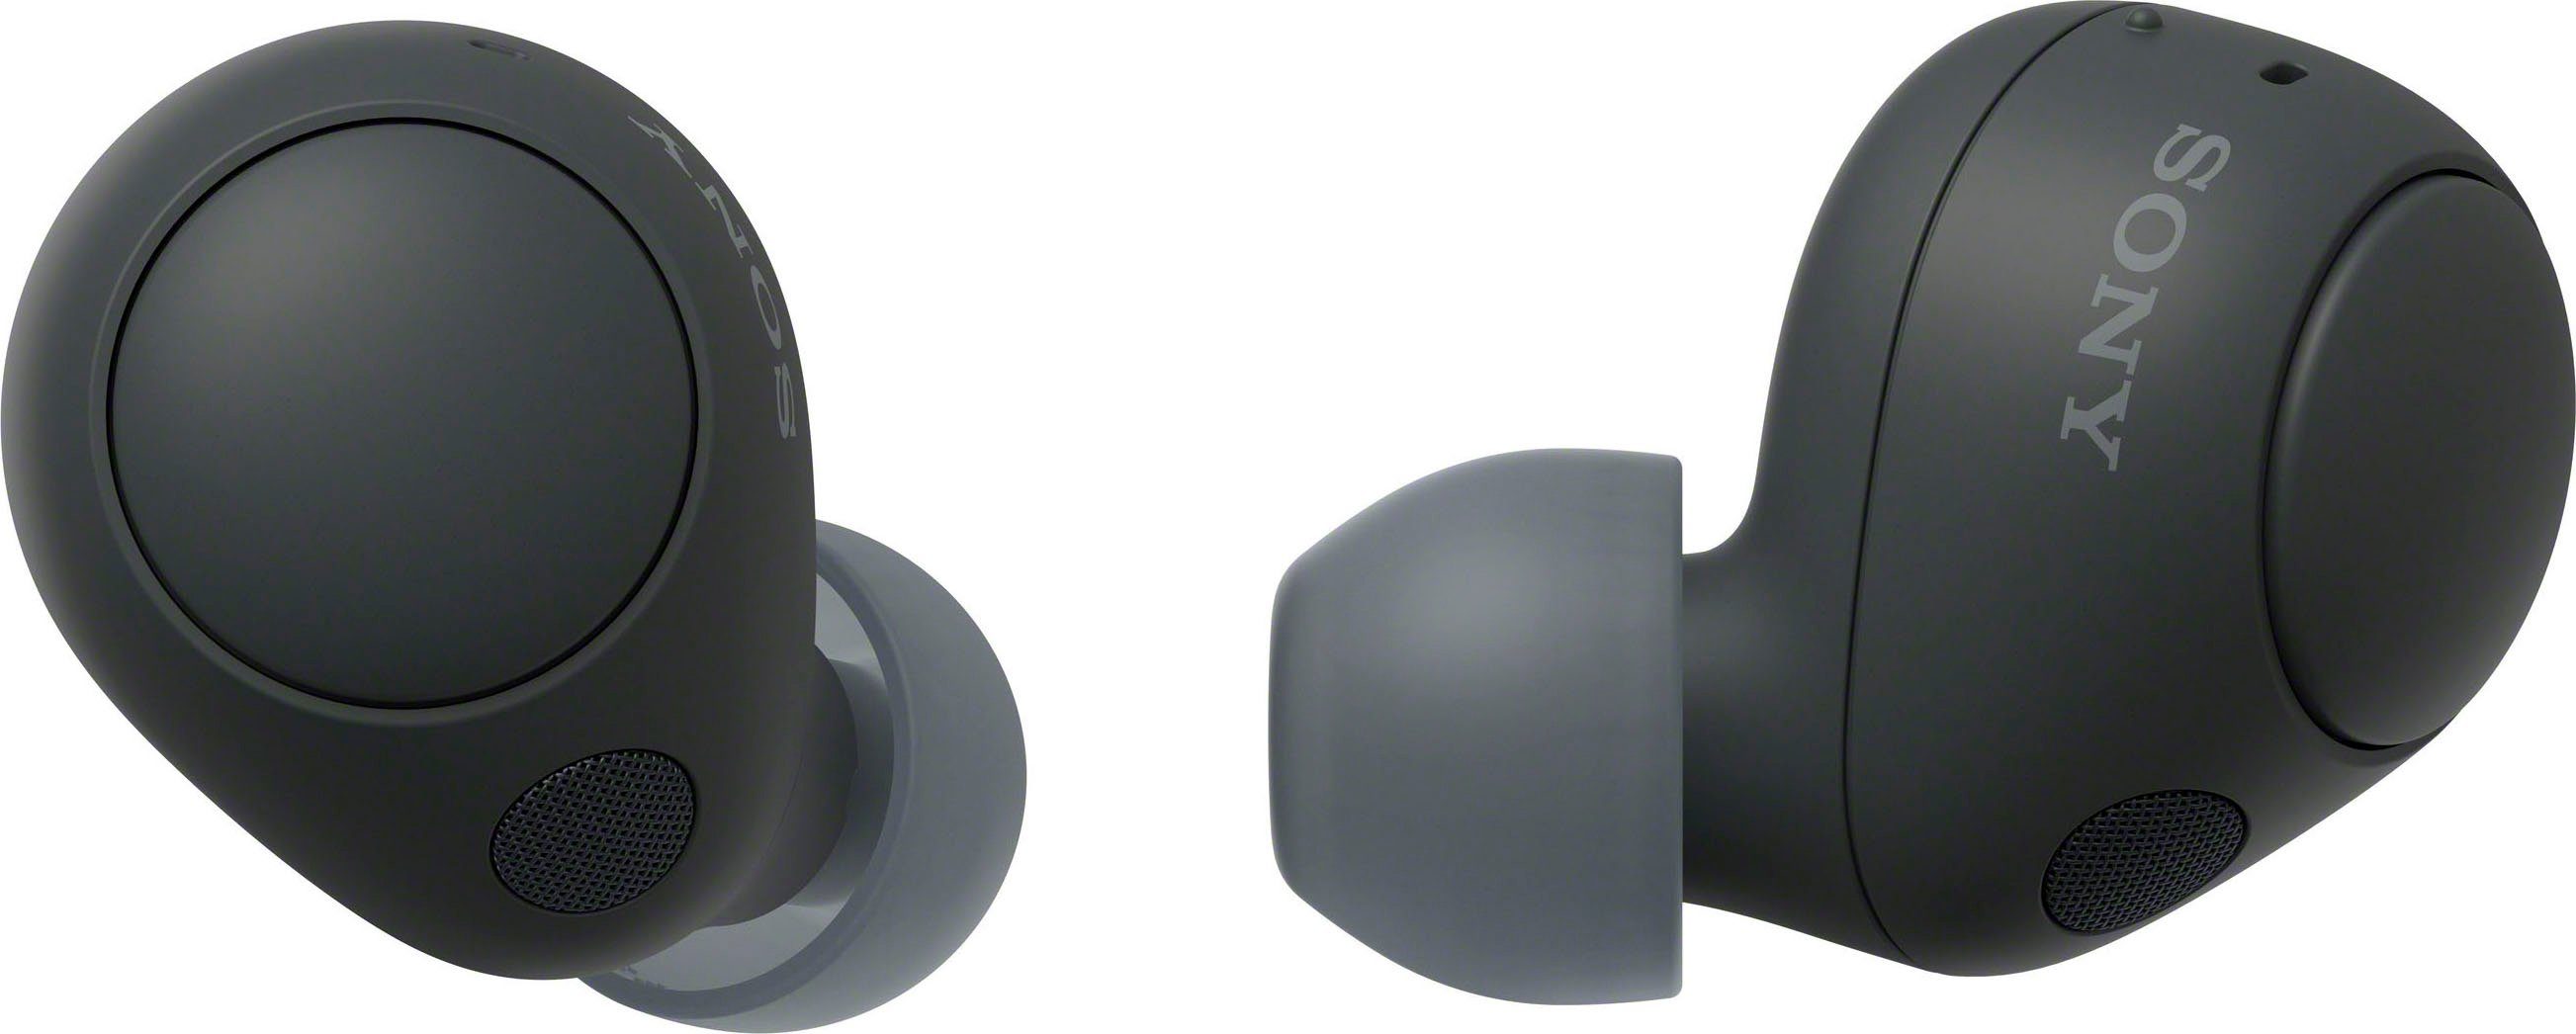 Sony WF-C700N In-Ear-Kopfhörer (Noise-Cancelling, Bluetooth, bis 20 Std. Akkulaufzeit, Multipoint Connection) Gojischwarz